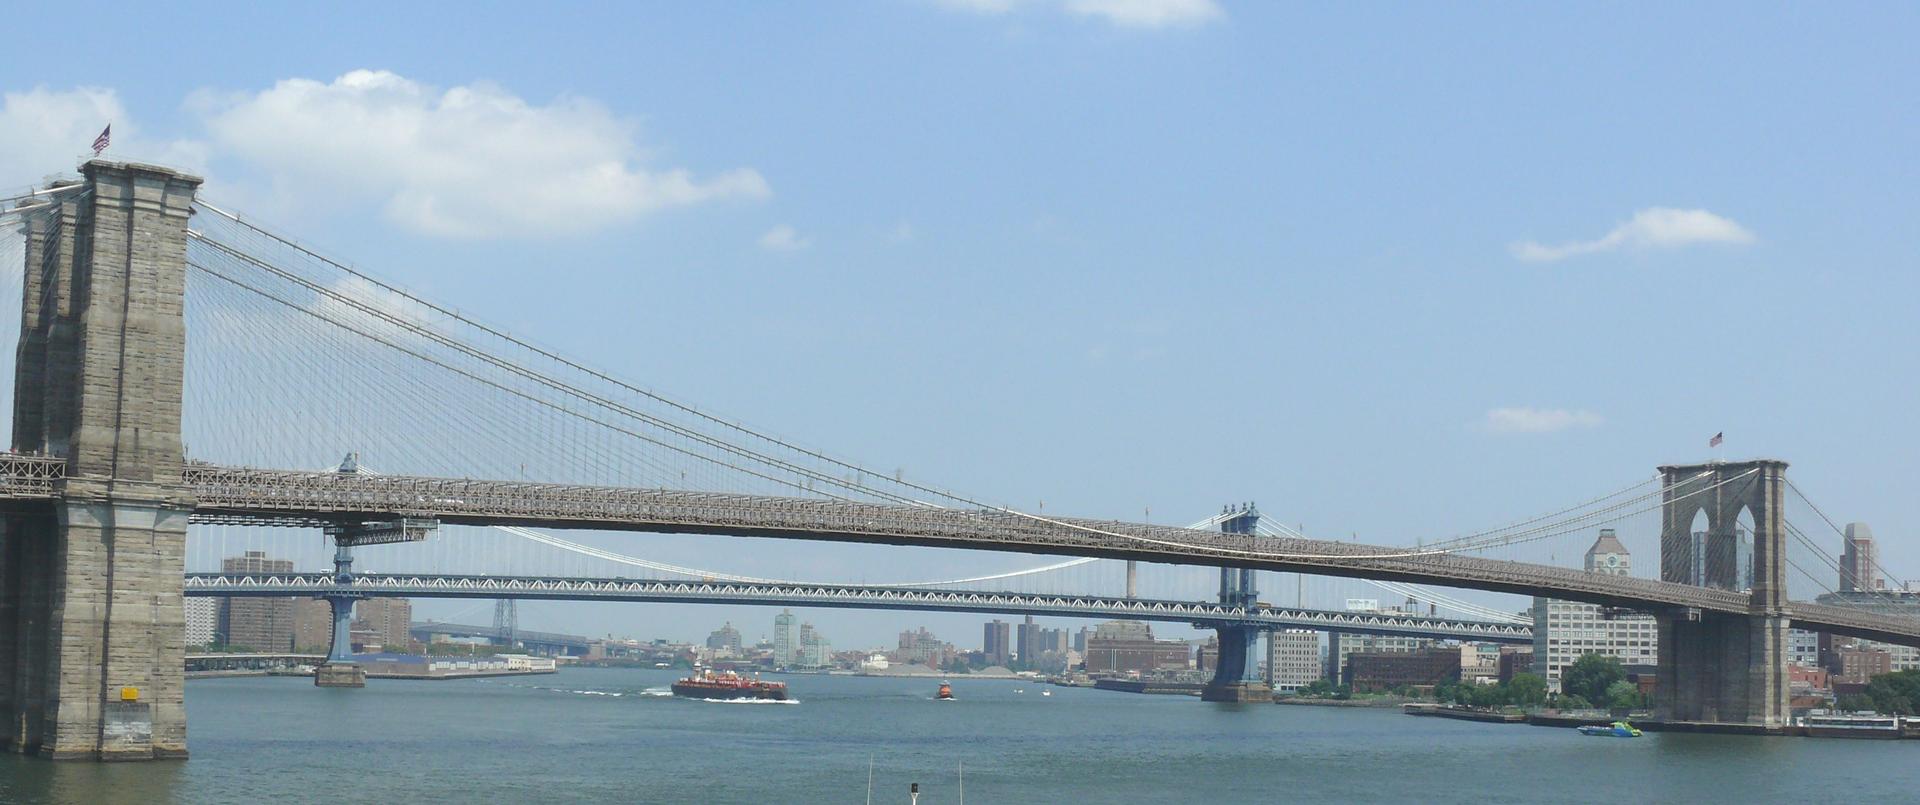 Brooklyn_Bridge_22.jpg